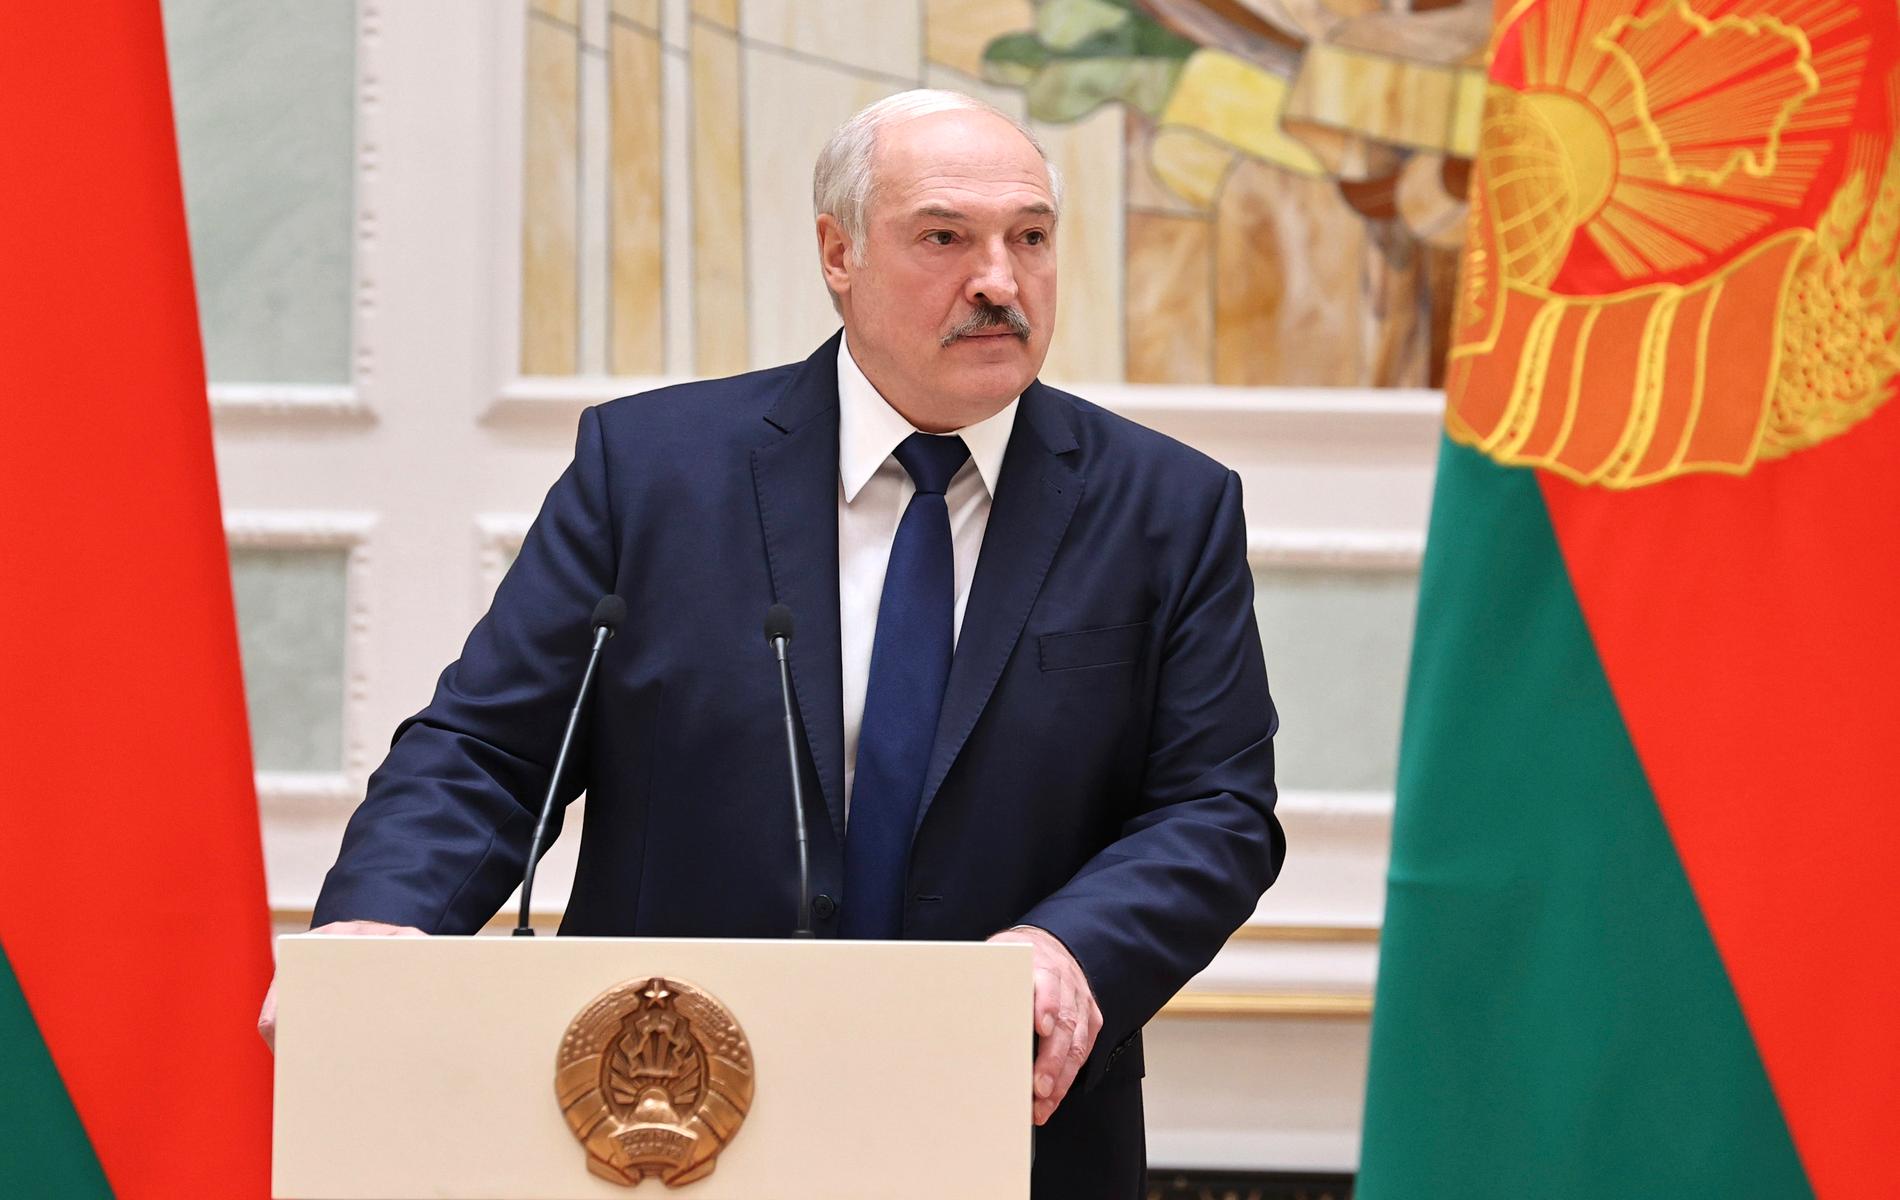 Aleksandr Lukasjenka, diktator i Belarus.